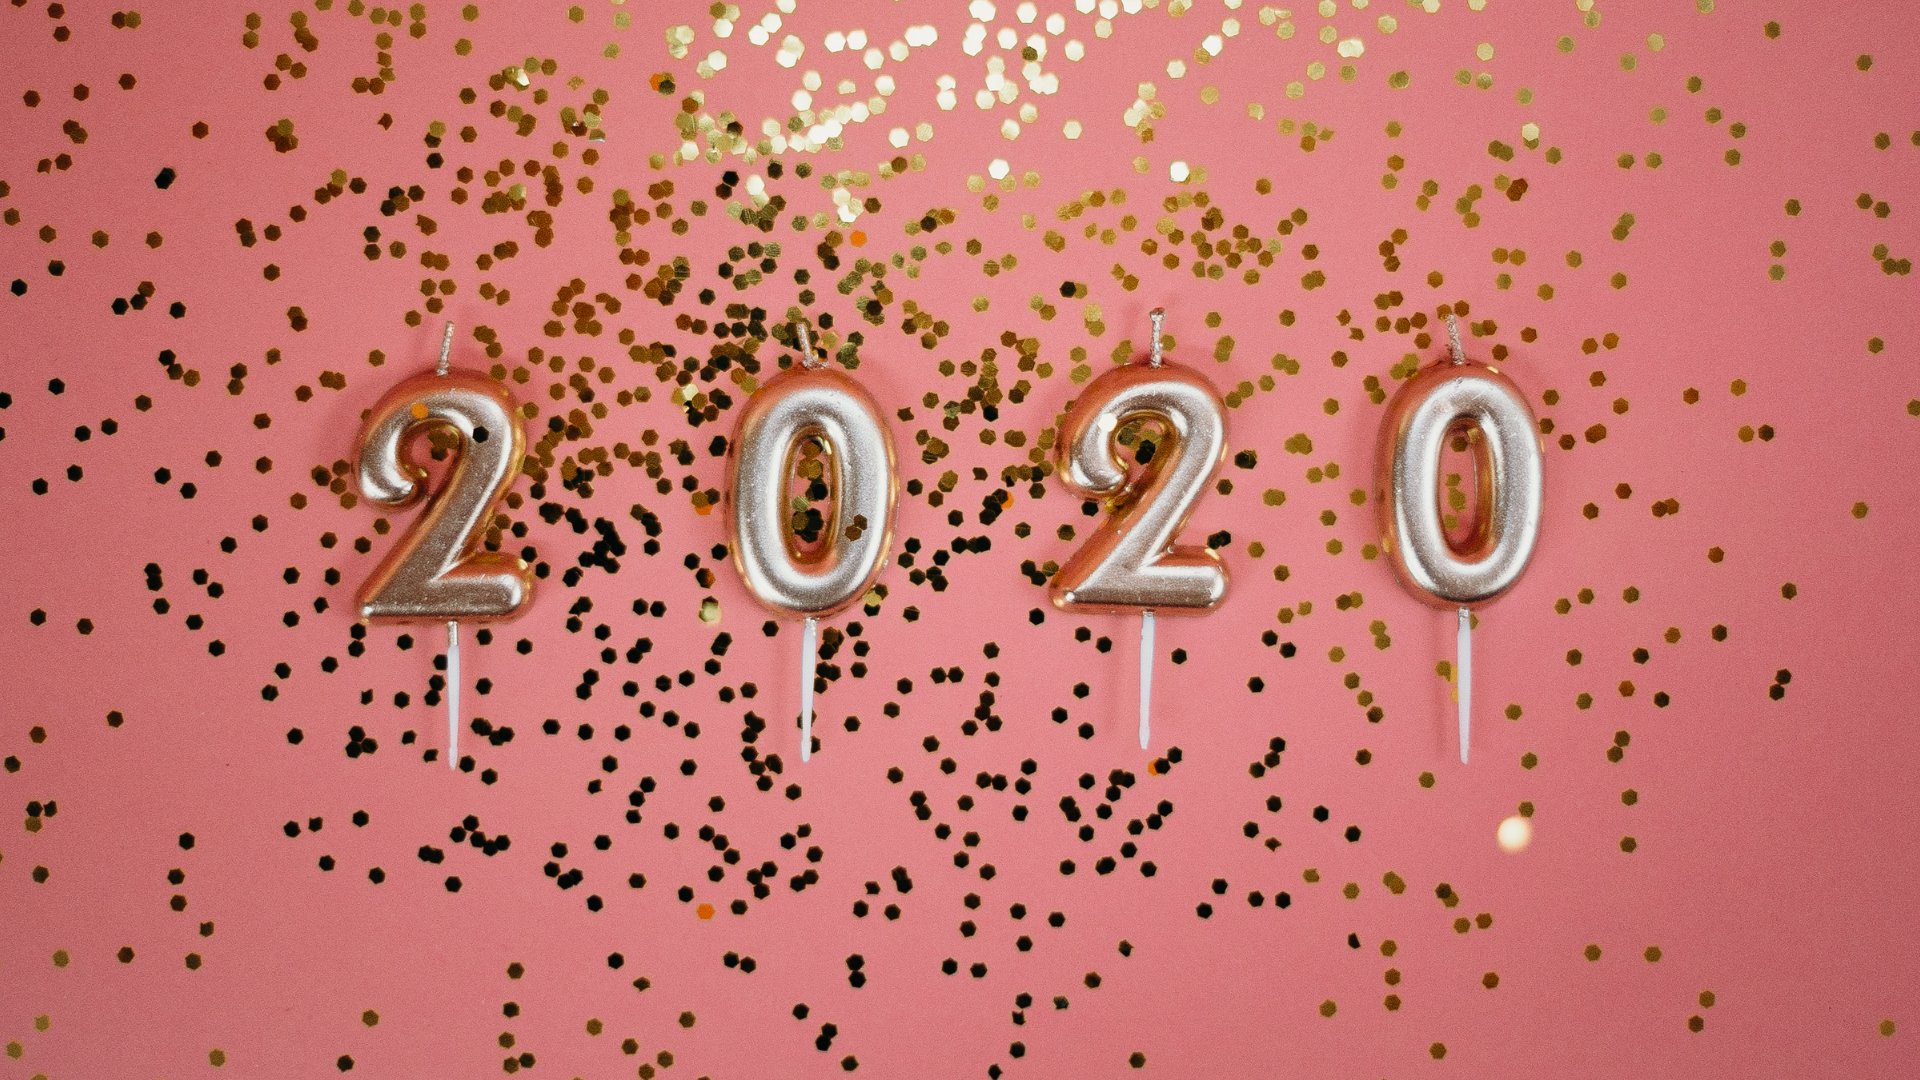 Brilhos e purpurina dourada espalhada com balões que formam 2020